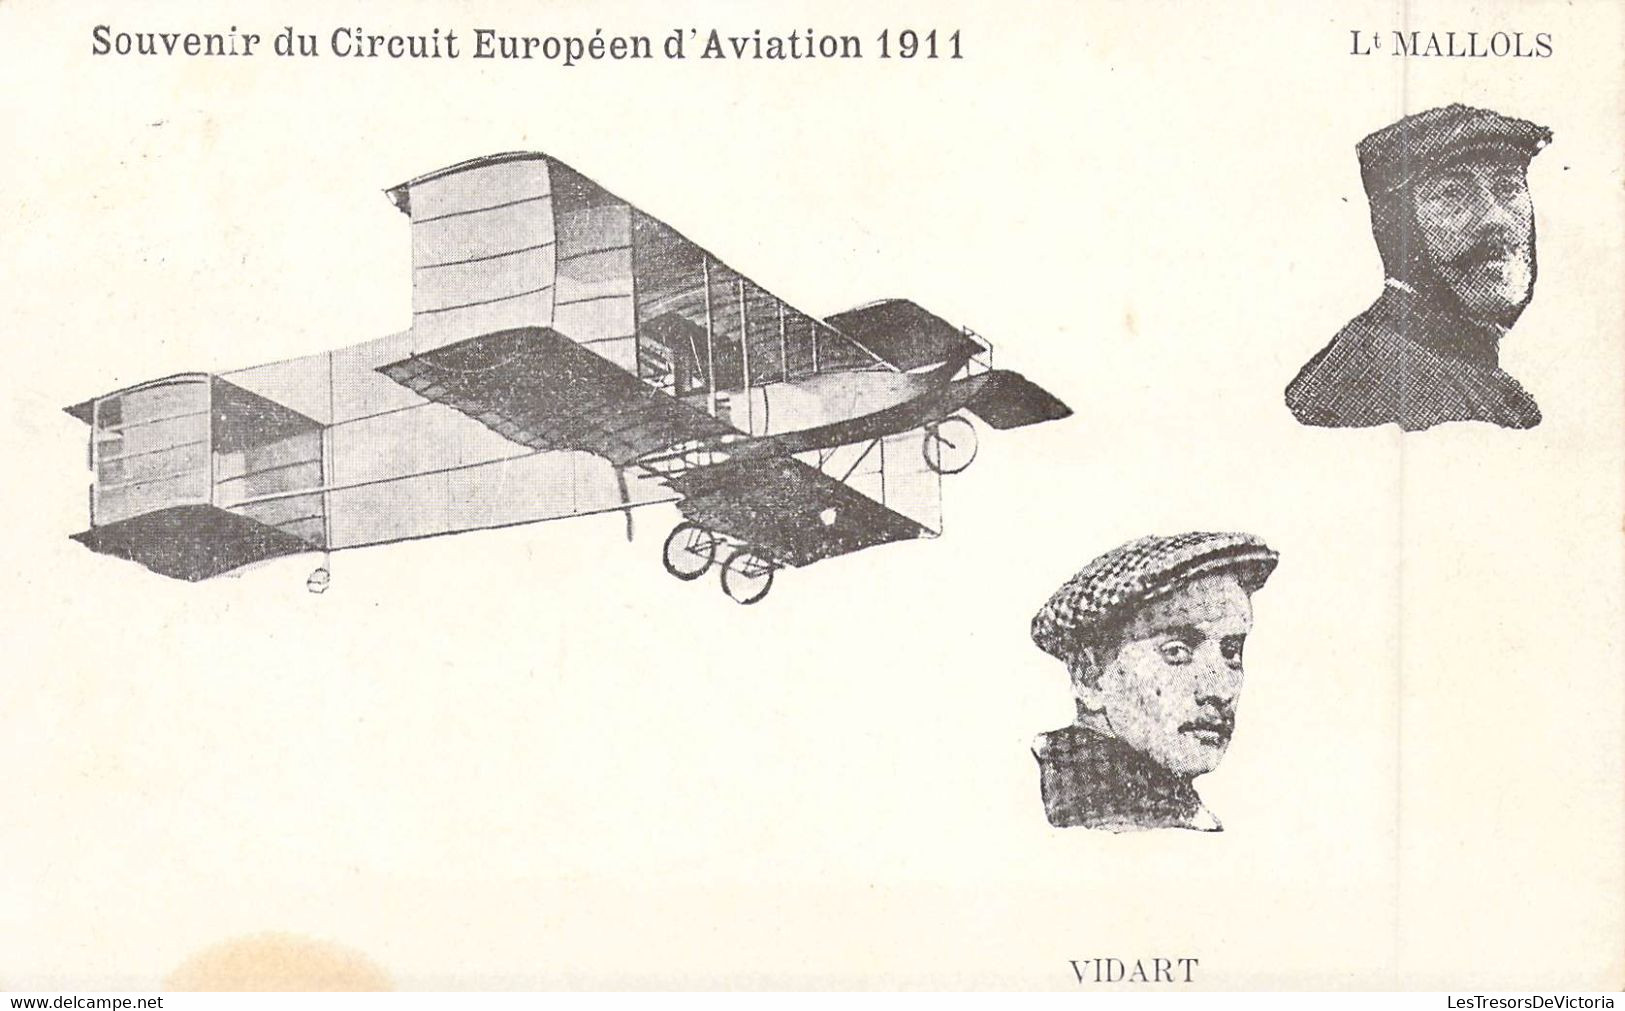 Aviateur - Aviation - Souvenirs Du Circuit D'aviation 1911 - Lt Mallols - Mr Vidart - Carte Postale Ancienne - Aviateurs